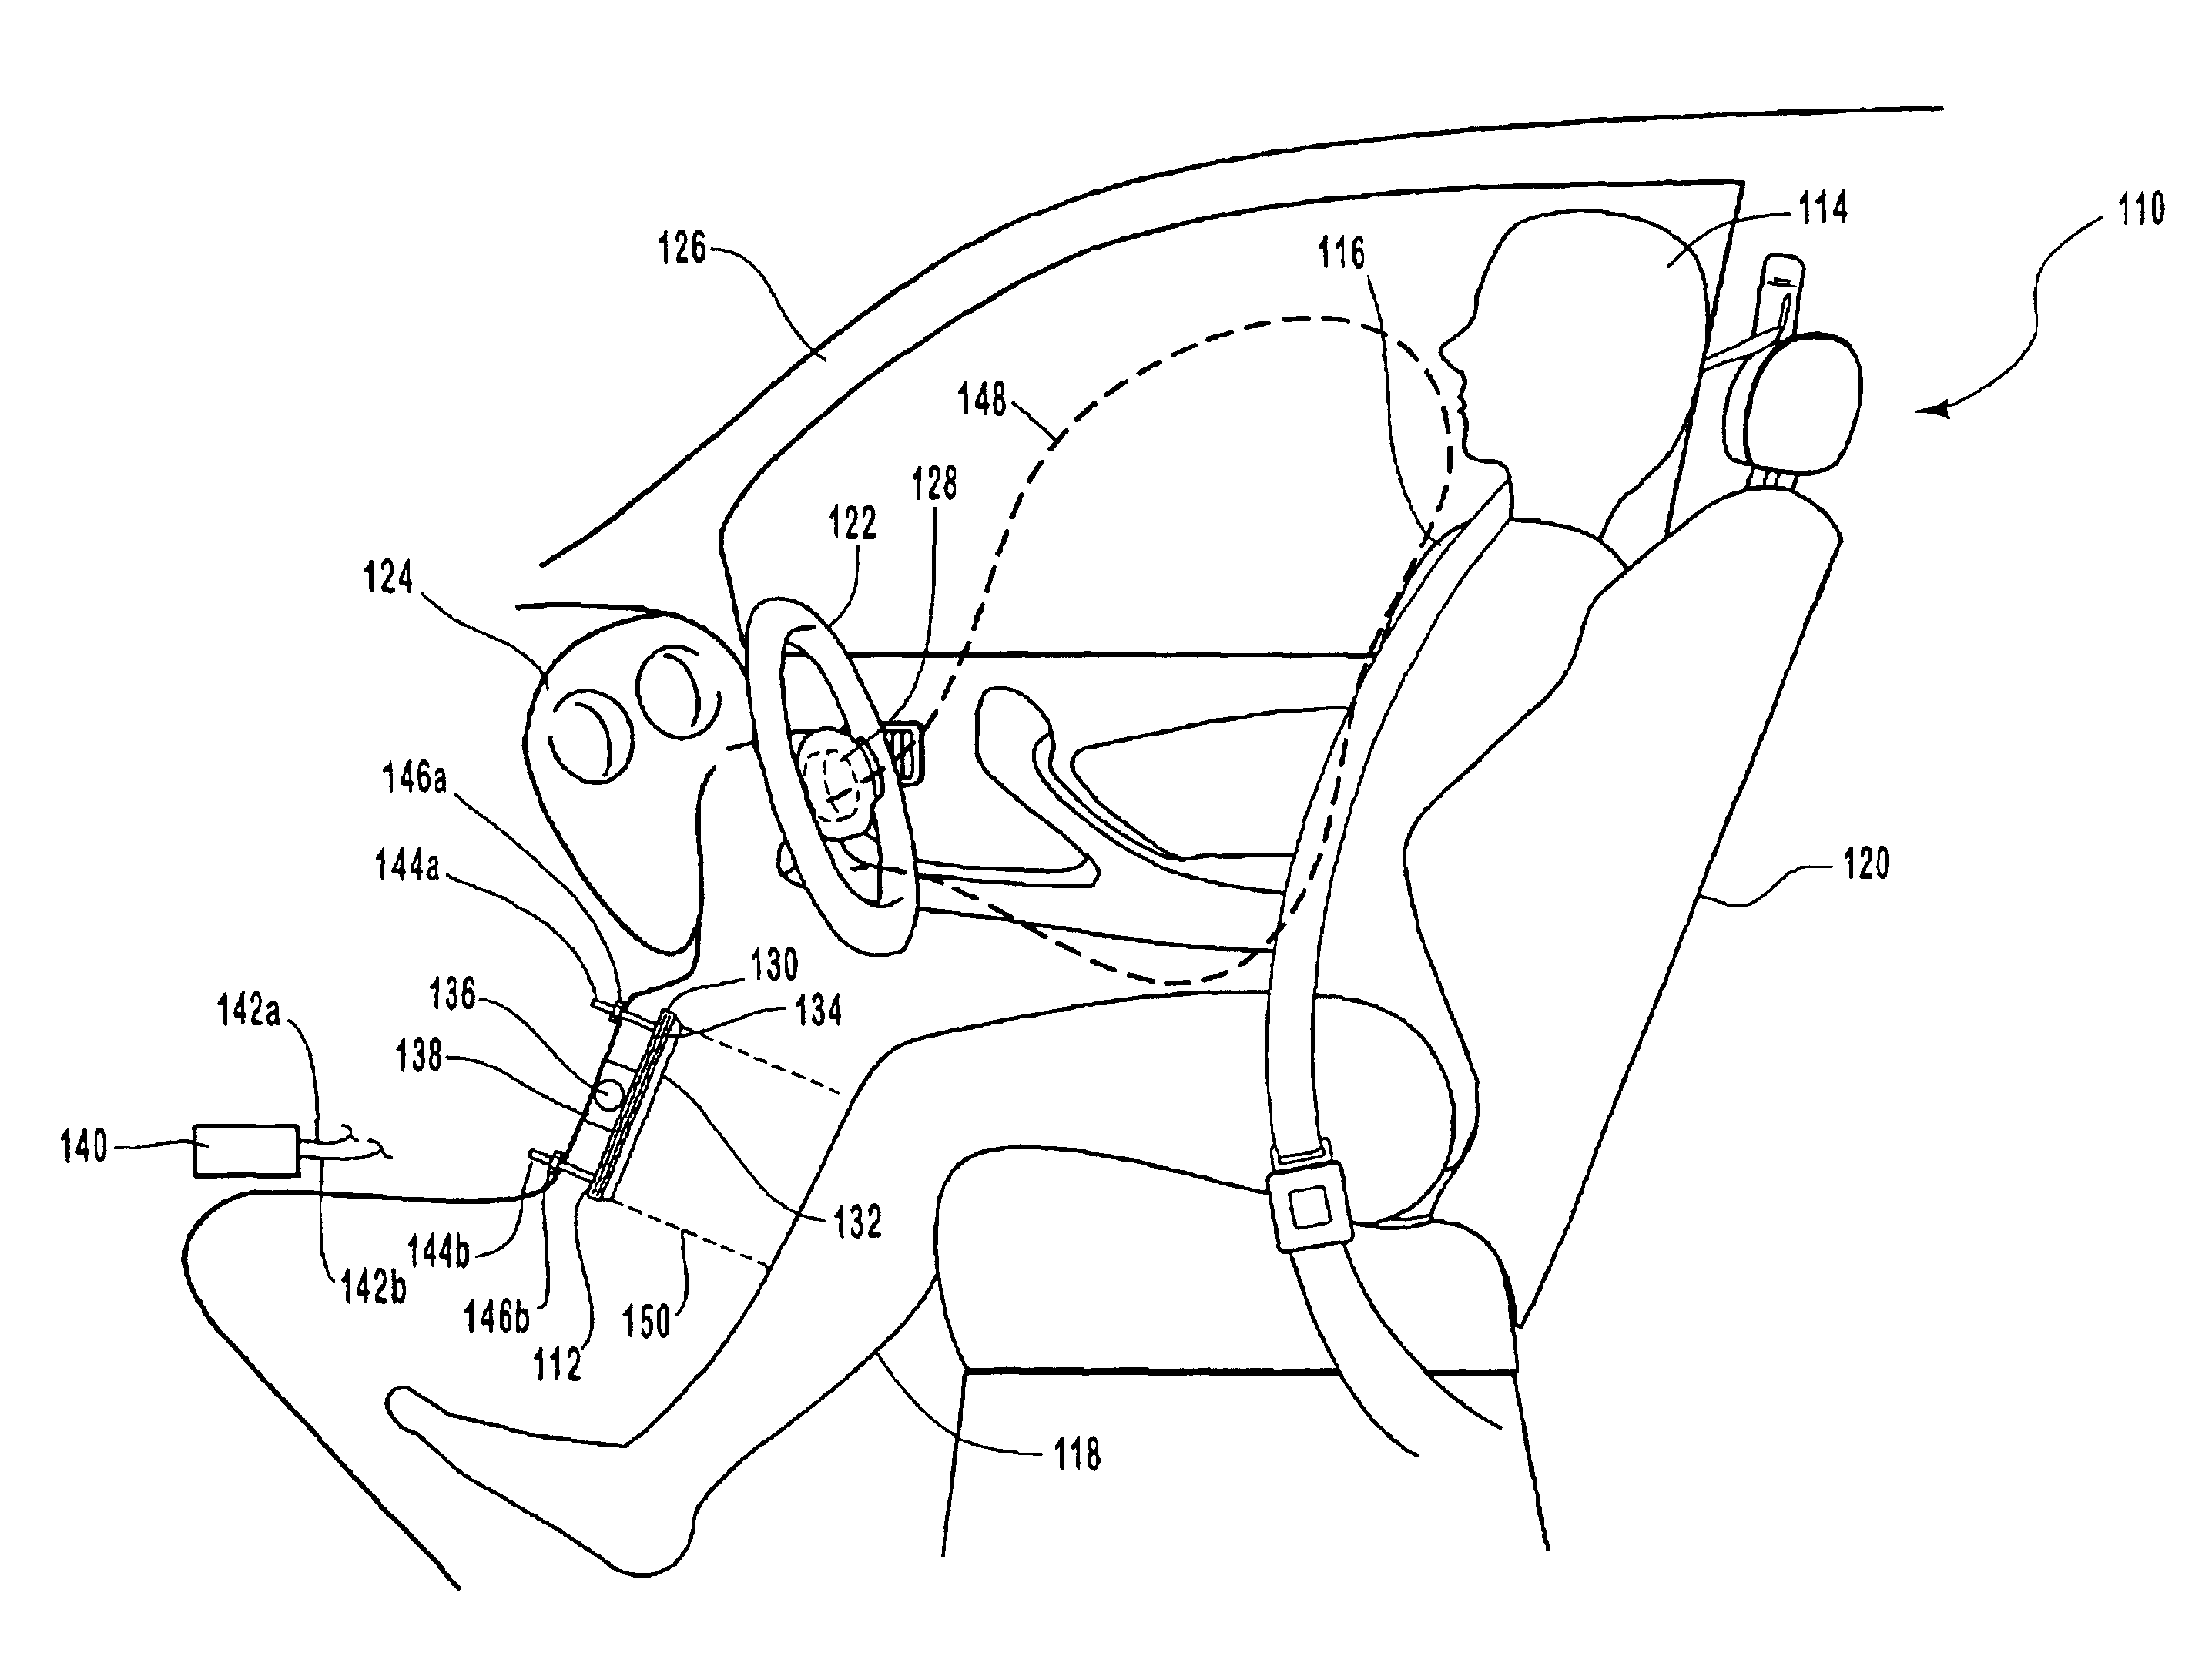 Folded rigid knee airbag